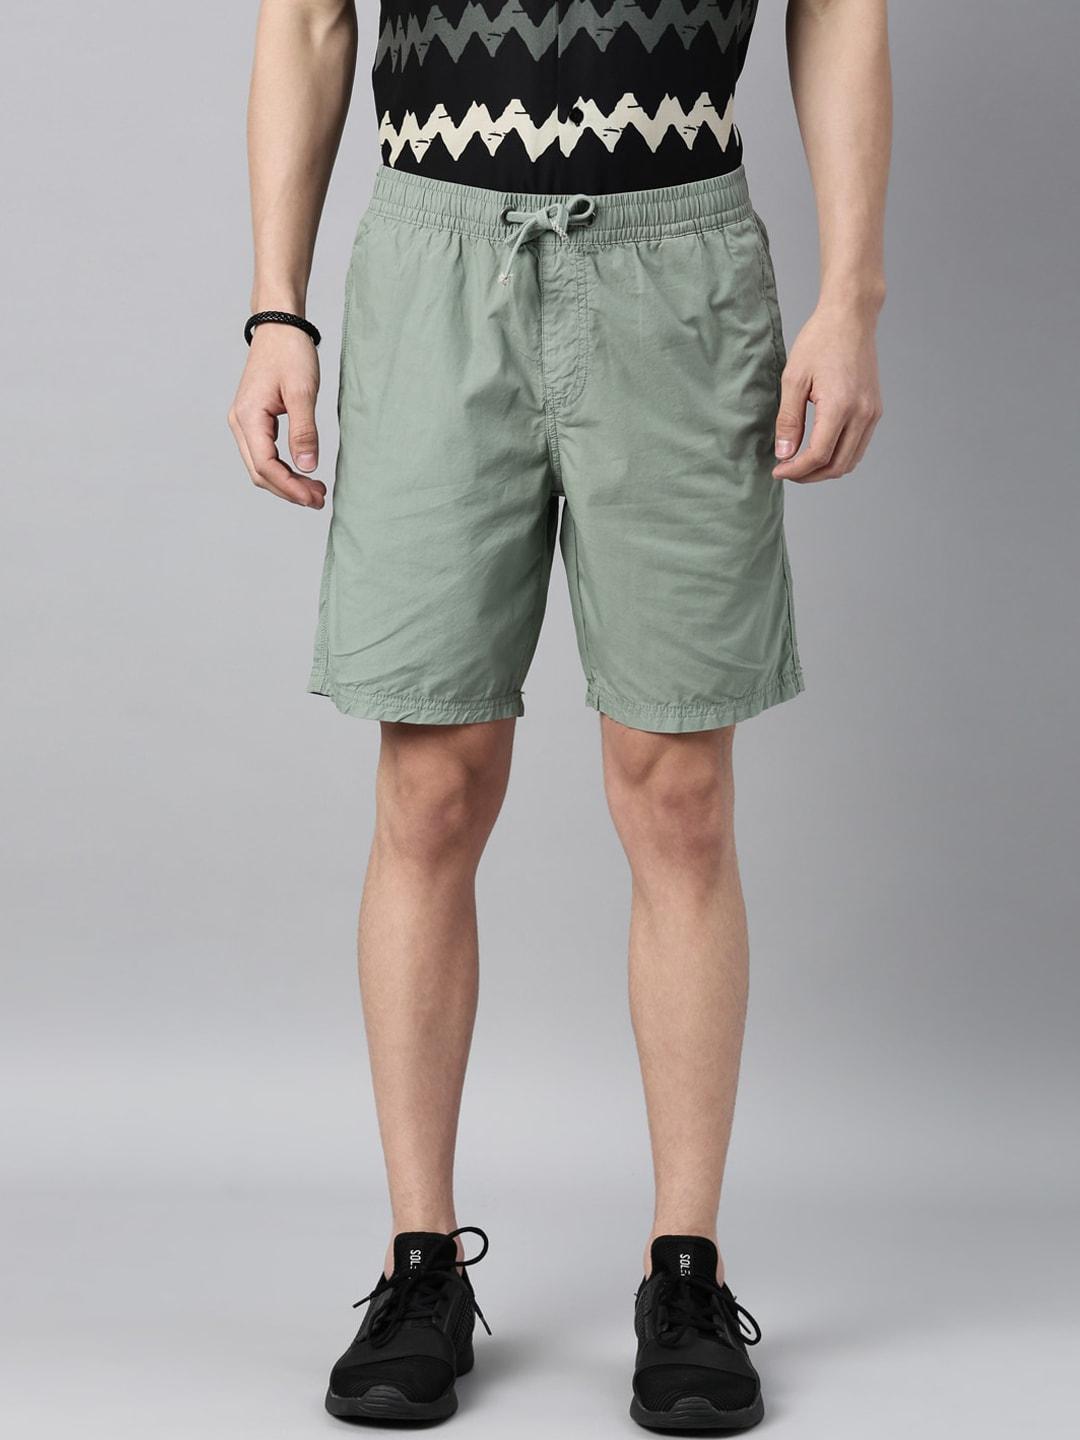 breakbounce-men-green-slim-fit-low-rise-sports-shorts